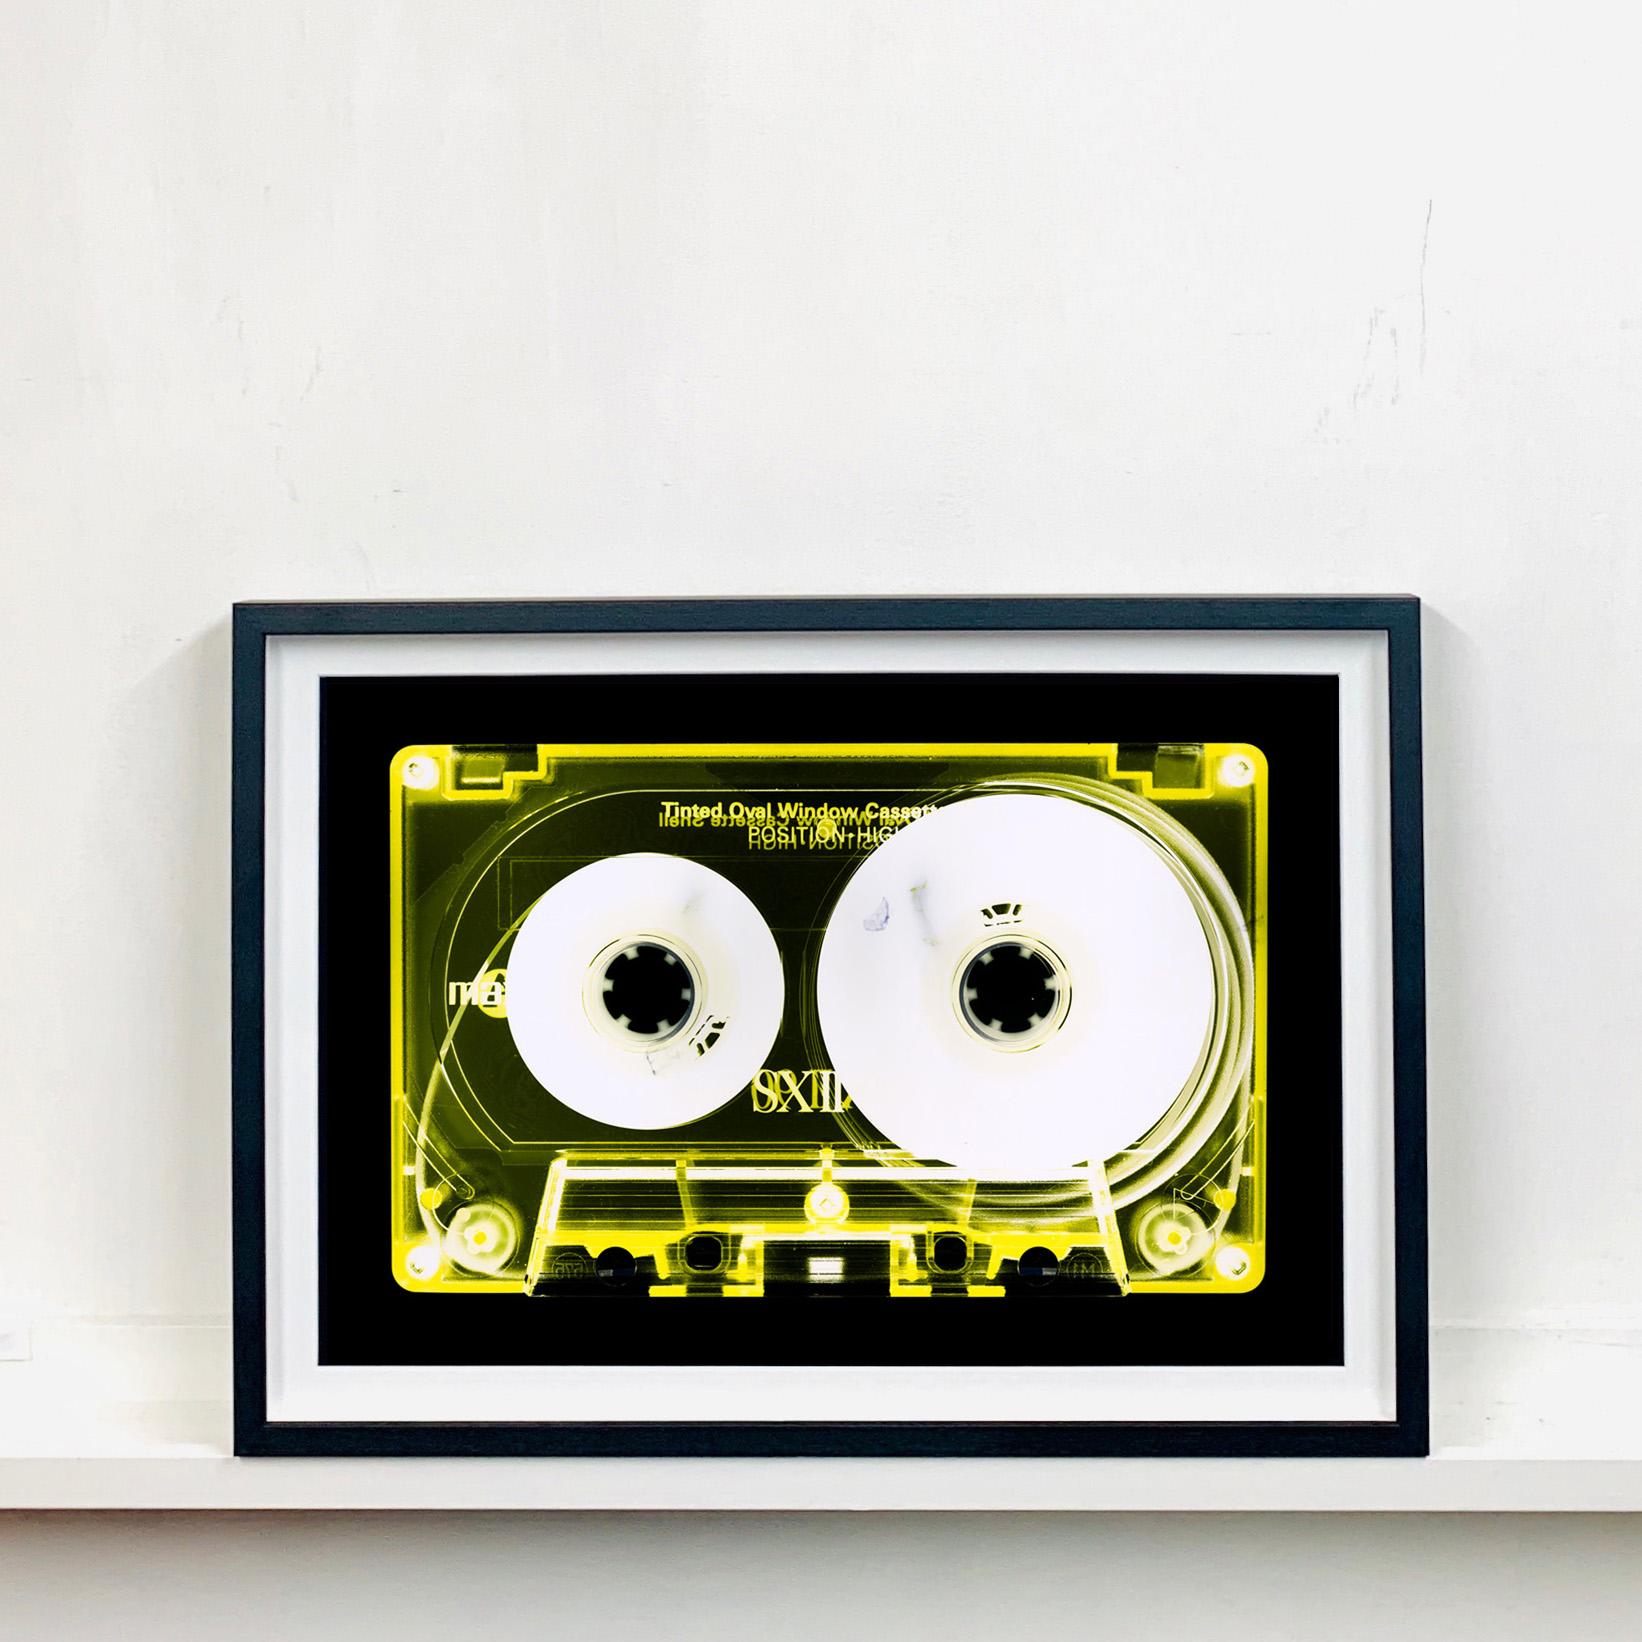 Cassette teintée en jaune de la collection de cassettes de Heidler & Heeps.
Les collaborations Heidler & Heeps sont des représentations créatives du passé personnel et de la personnalité de Natasha Heidler et Richard Heeps. Les bandes sont